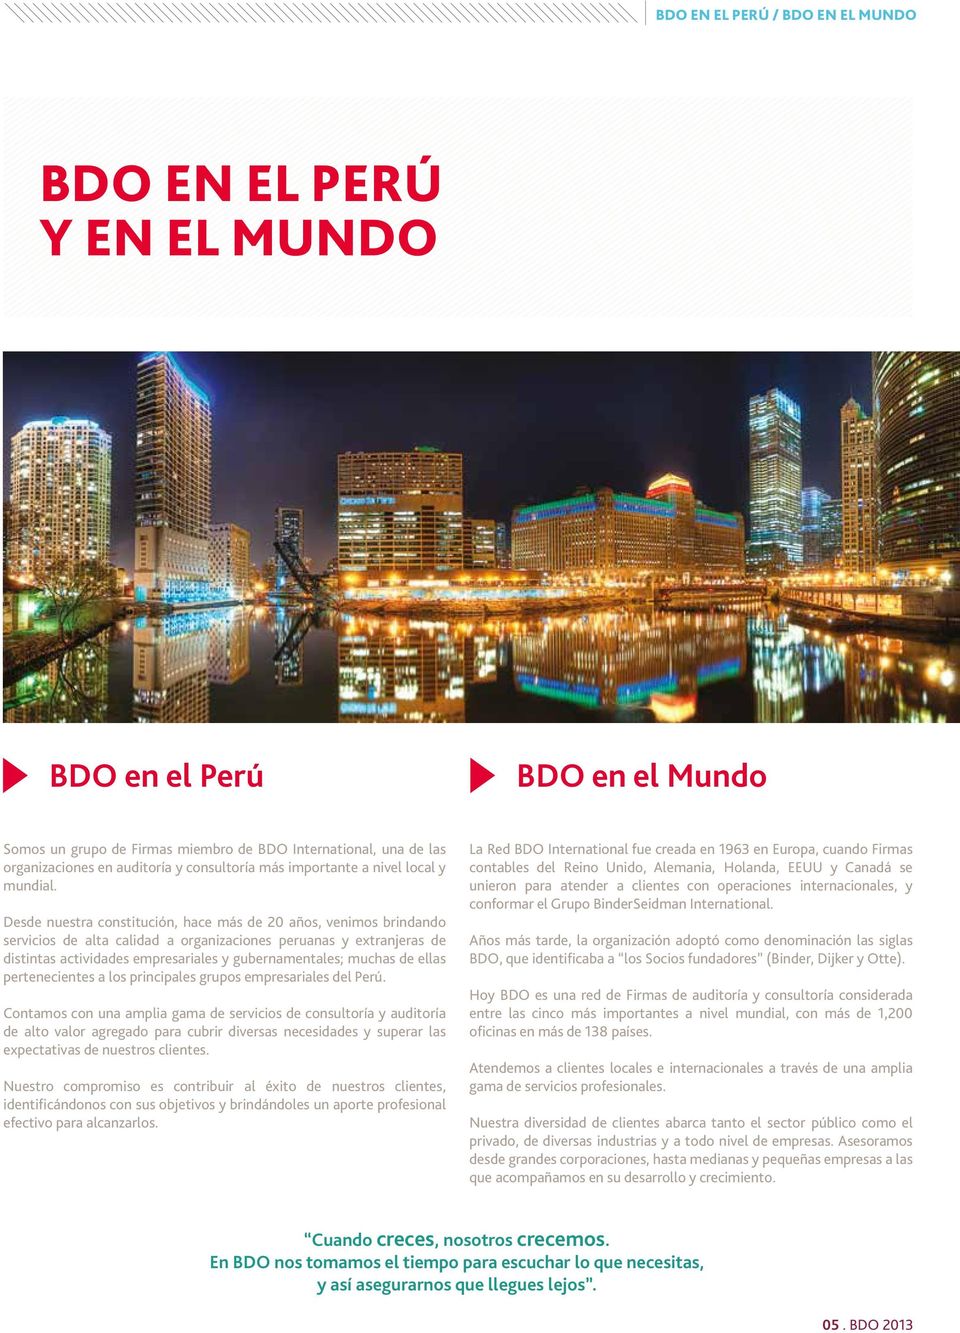 Desde nuestra constitución, hace más de 20 años, venimos brindando servicios de alta calidad a organizaciones peruanas y extranjeras de distintas actividades empresariales y gubernamentales; muchas